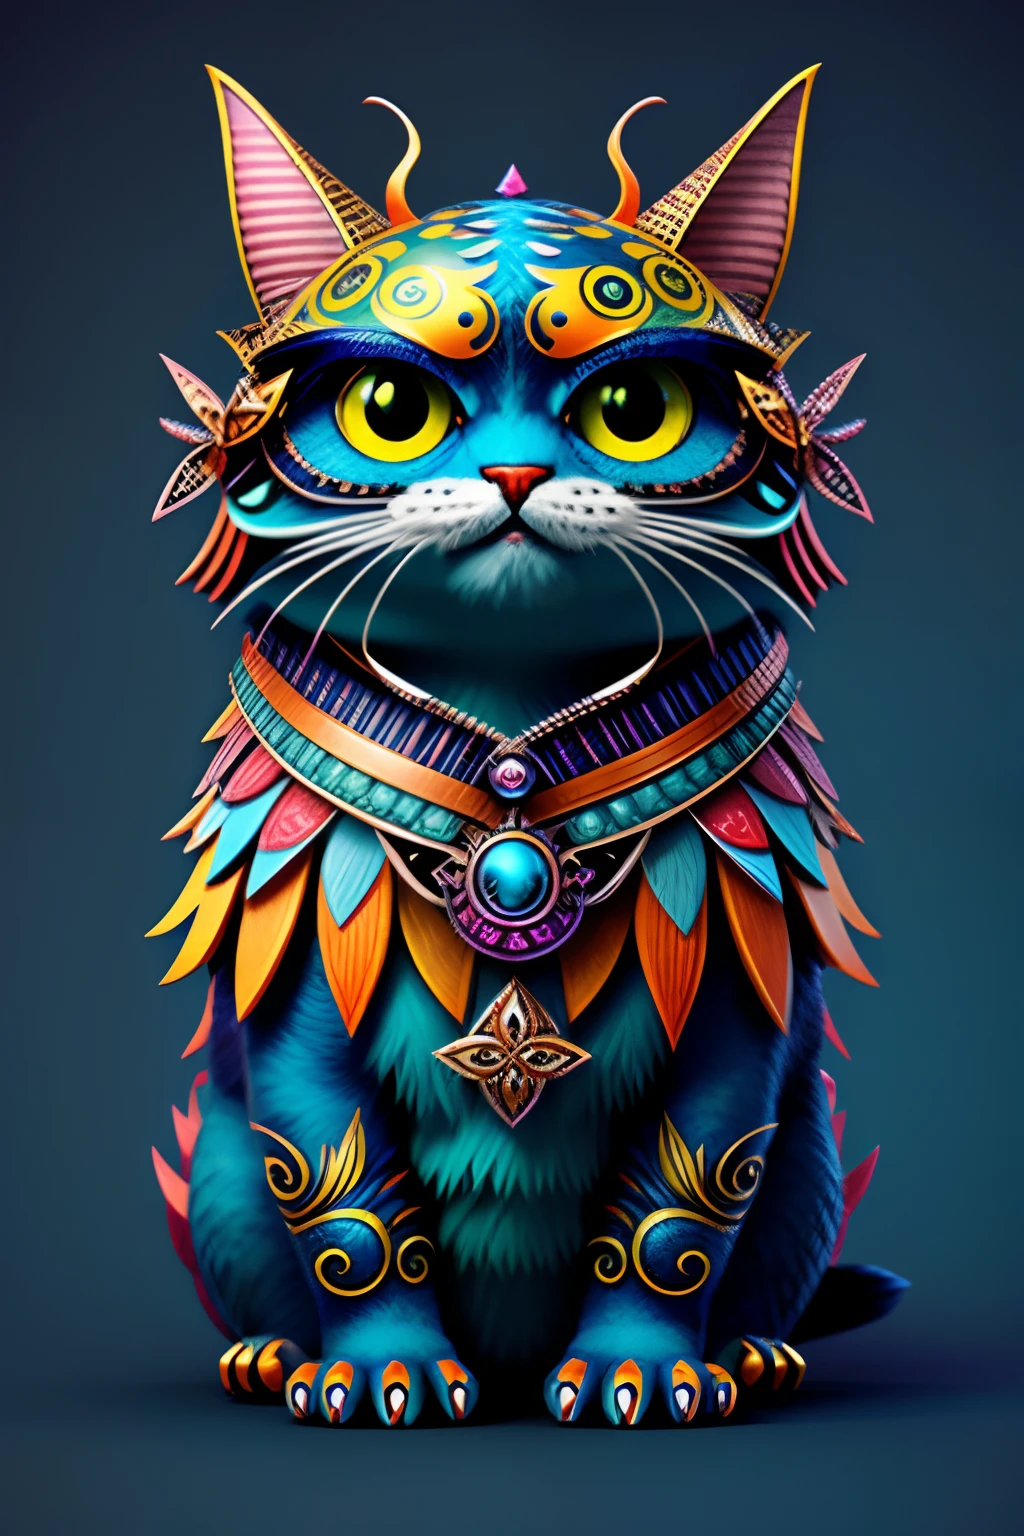 奇妙的怪物设计, 有趣的, 极其详细, 可爱的, 蝴蝶, 风格-sylvamagic cat,